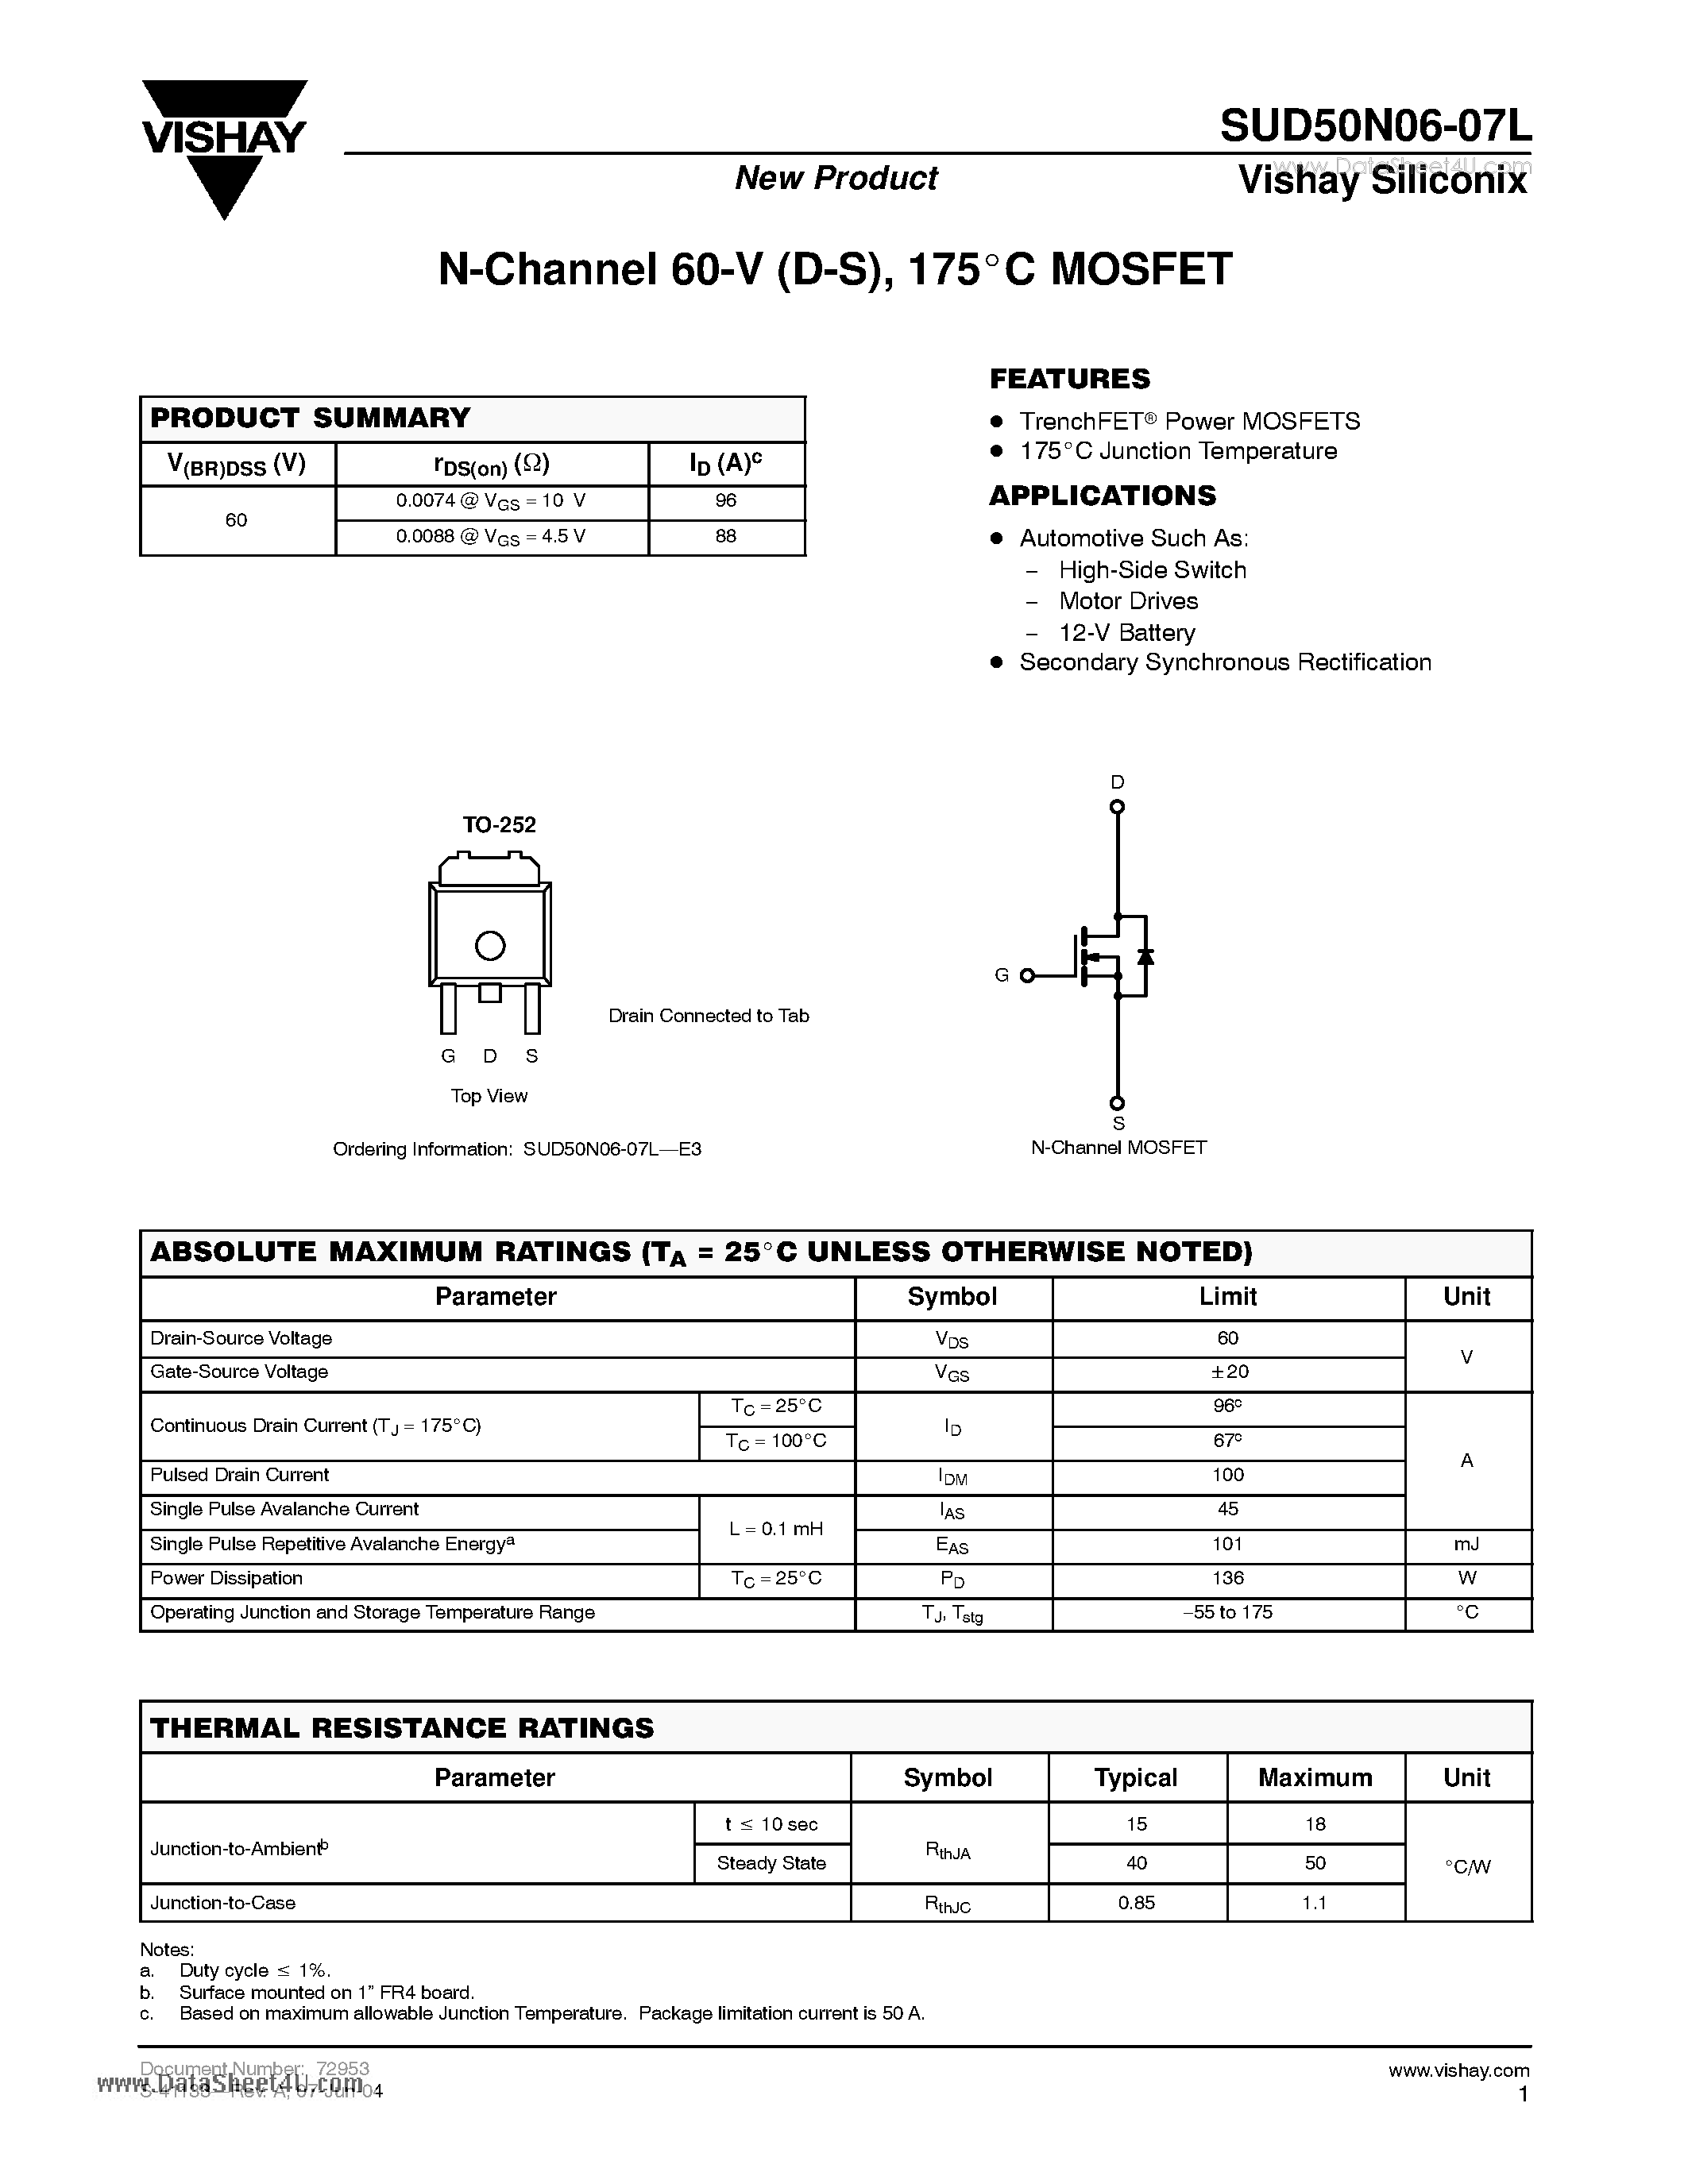 Даташит SUD50N06-07L - N-Channel 60-V (D-S) 175 C MOSFET страница 1